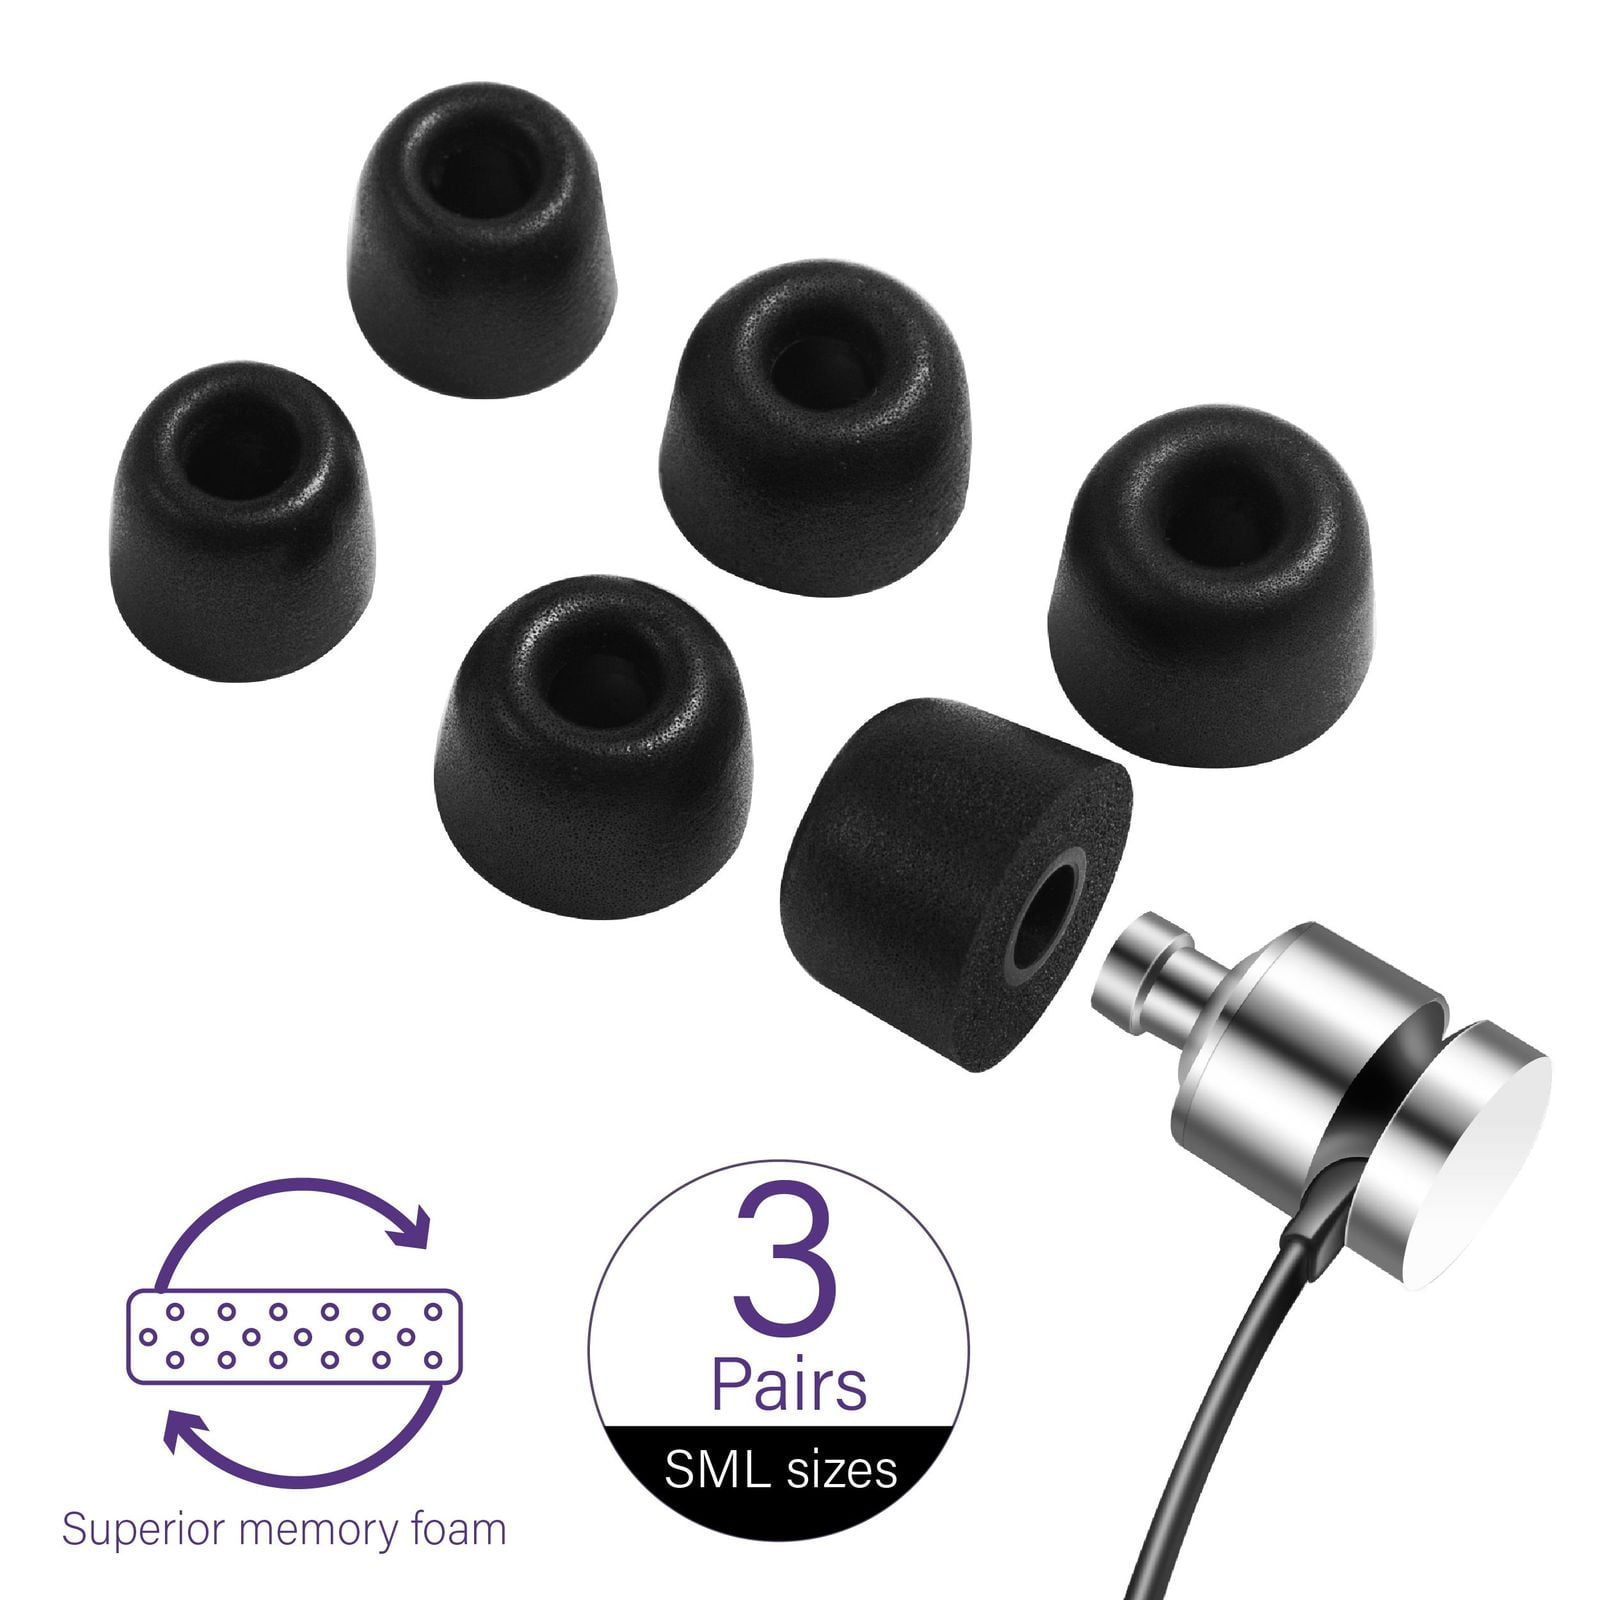 6 Memory foams Earbud Ear Tips for TOSHIBA RZE-S60 S70 In-Ear Headphones 